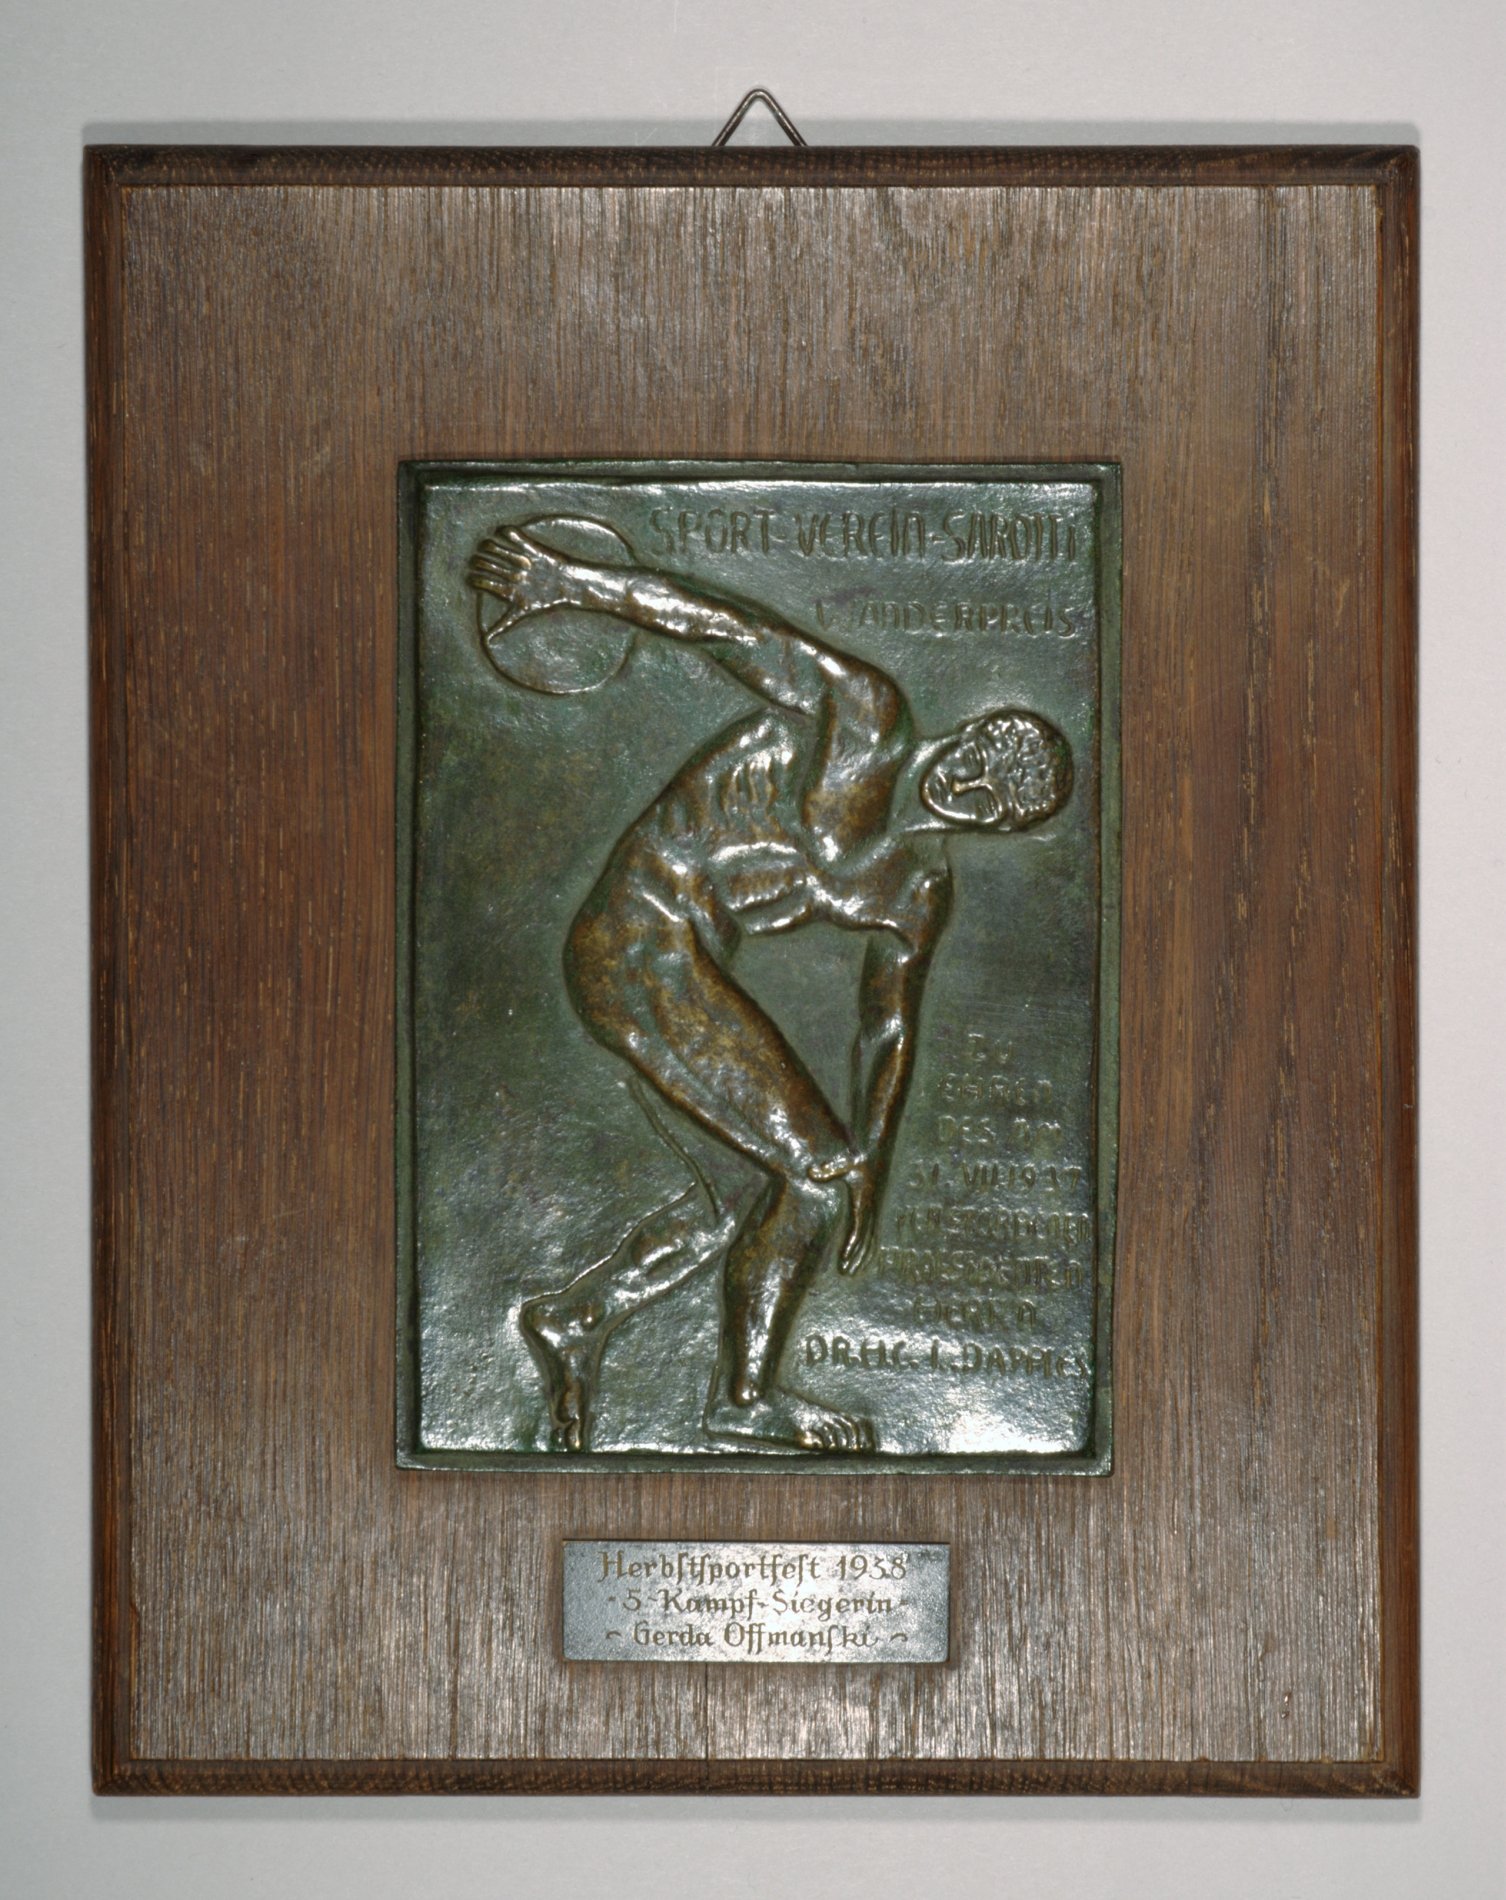 Auszeichnung "Herbstsportfest 1938" (Stiftung Domäne Dahlem - Landgut und Museum, Weiternutzung nur mit Genehmigung des Museums CC BY-NC-SA)